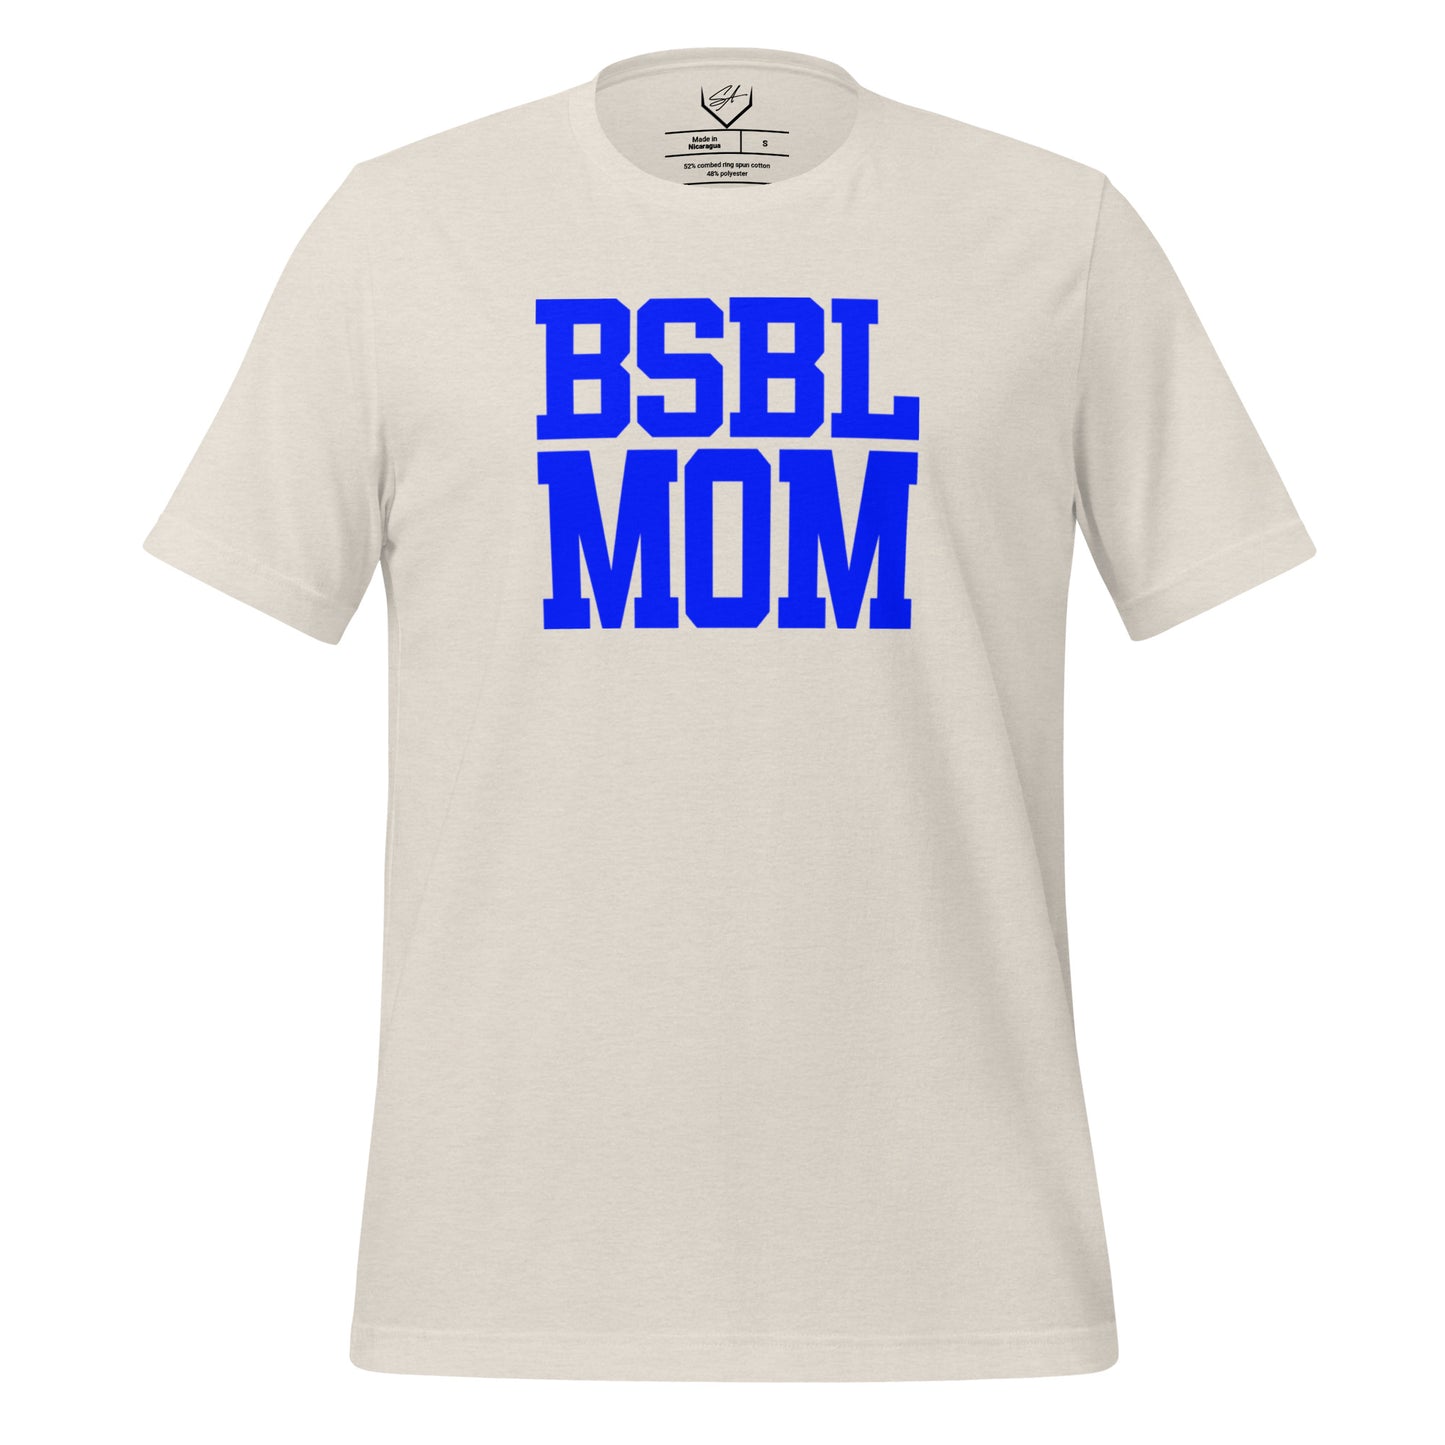 BSBL Mom Blue - Adult Tee